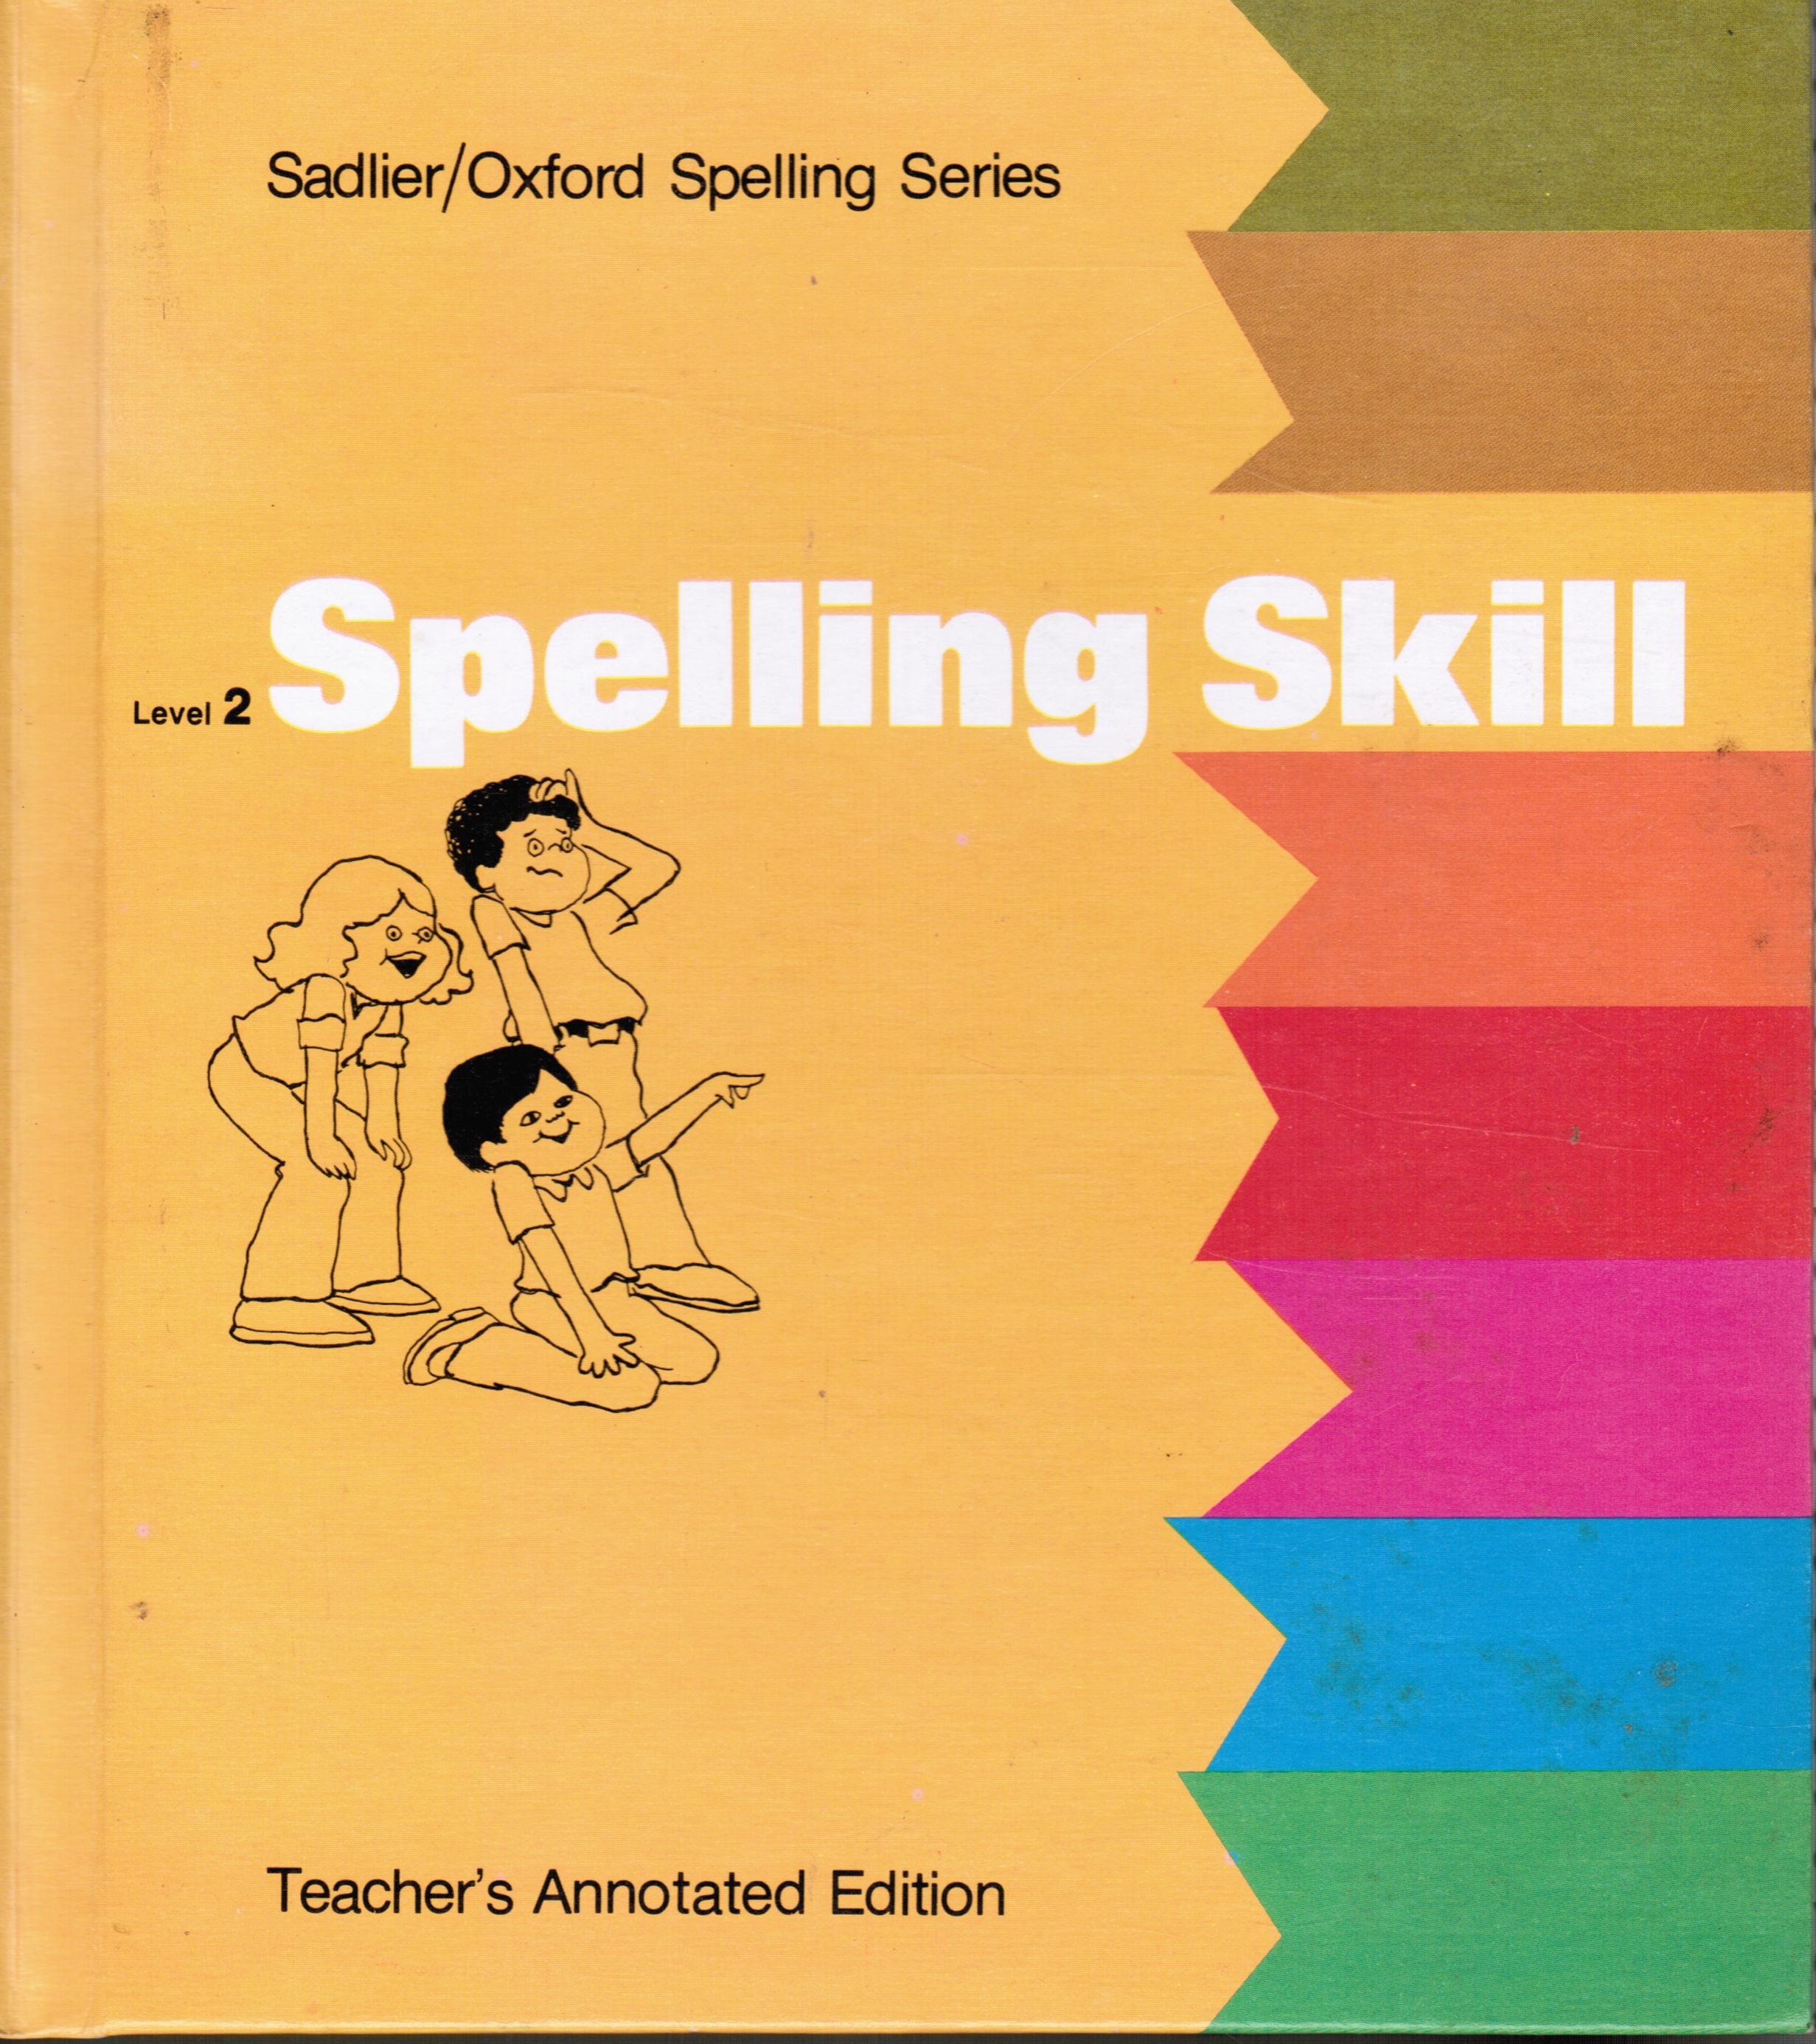 FLETCHER, BERNARD, MARY ENDRES, ET AL - Spelling Skill: Level 2 Teacher's Edition